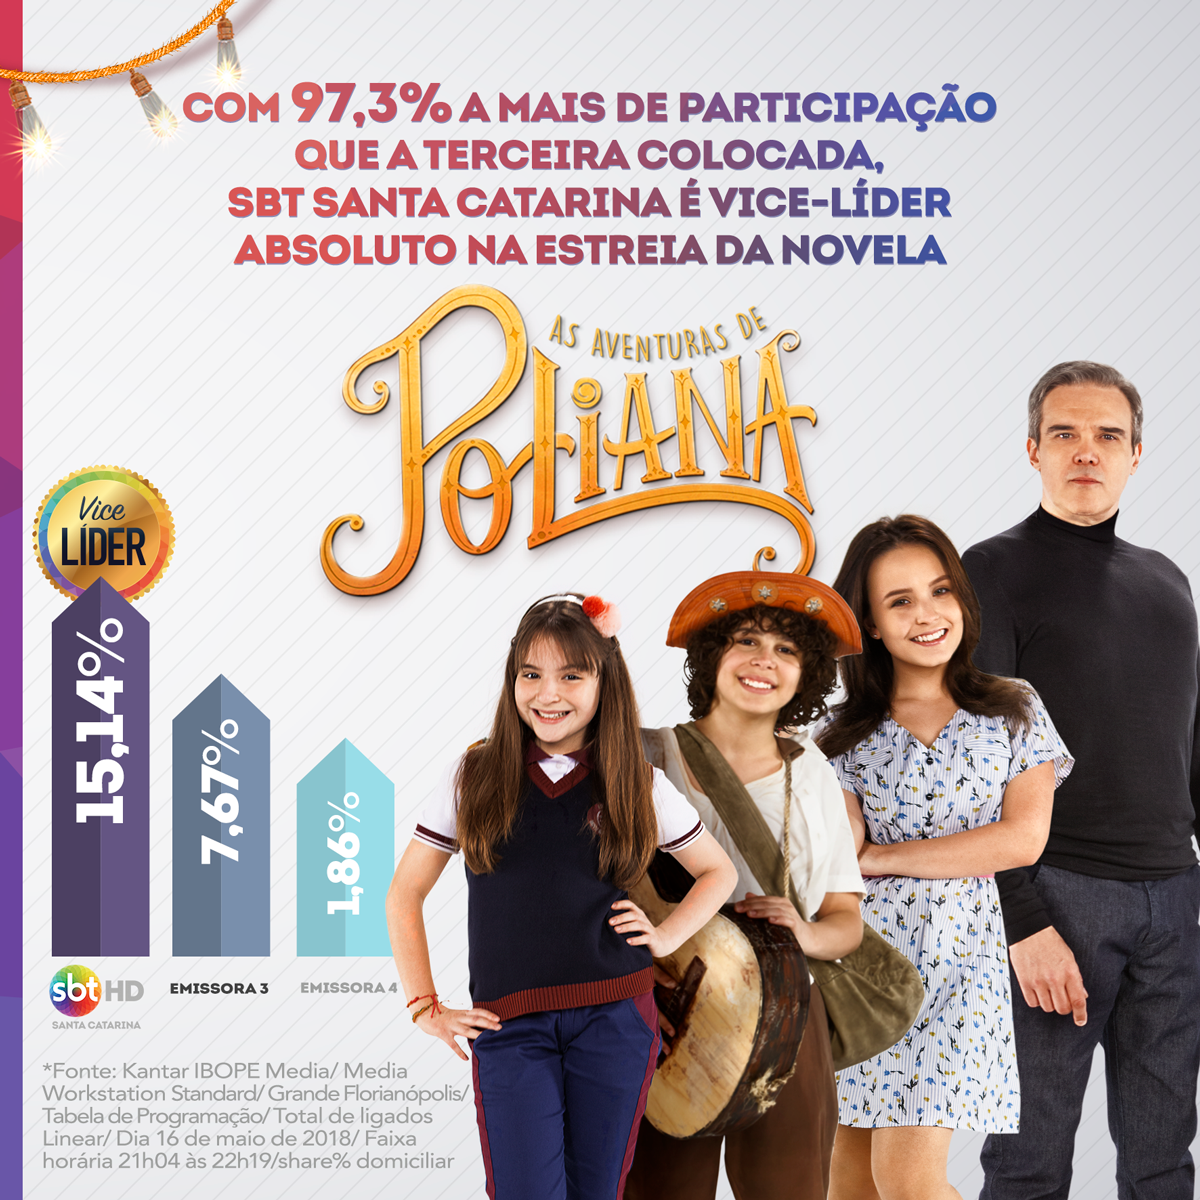 SBT Santa Catarina é vice-líder absoluto durante a estreia da novela ‘As Aventuras de Poliana’